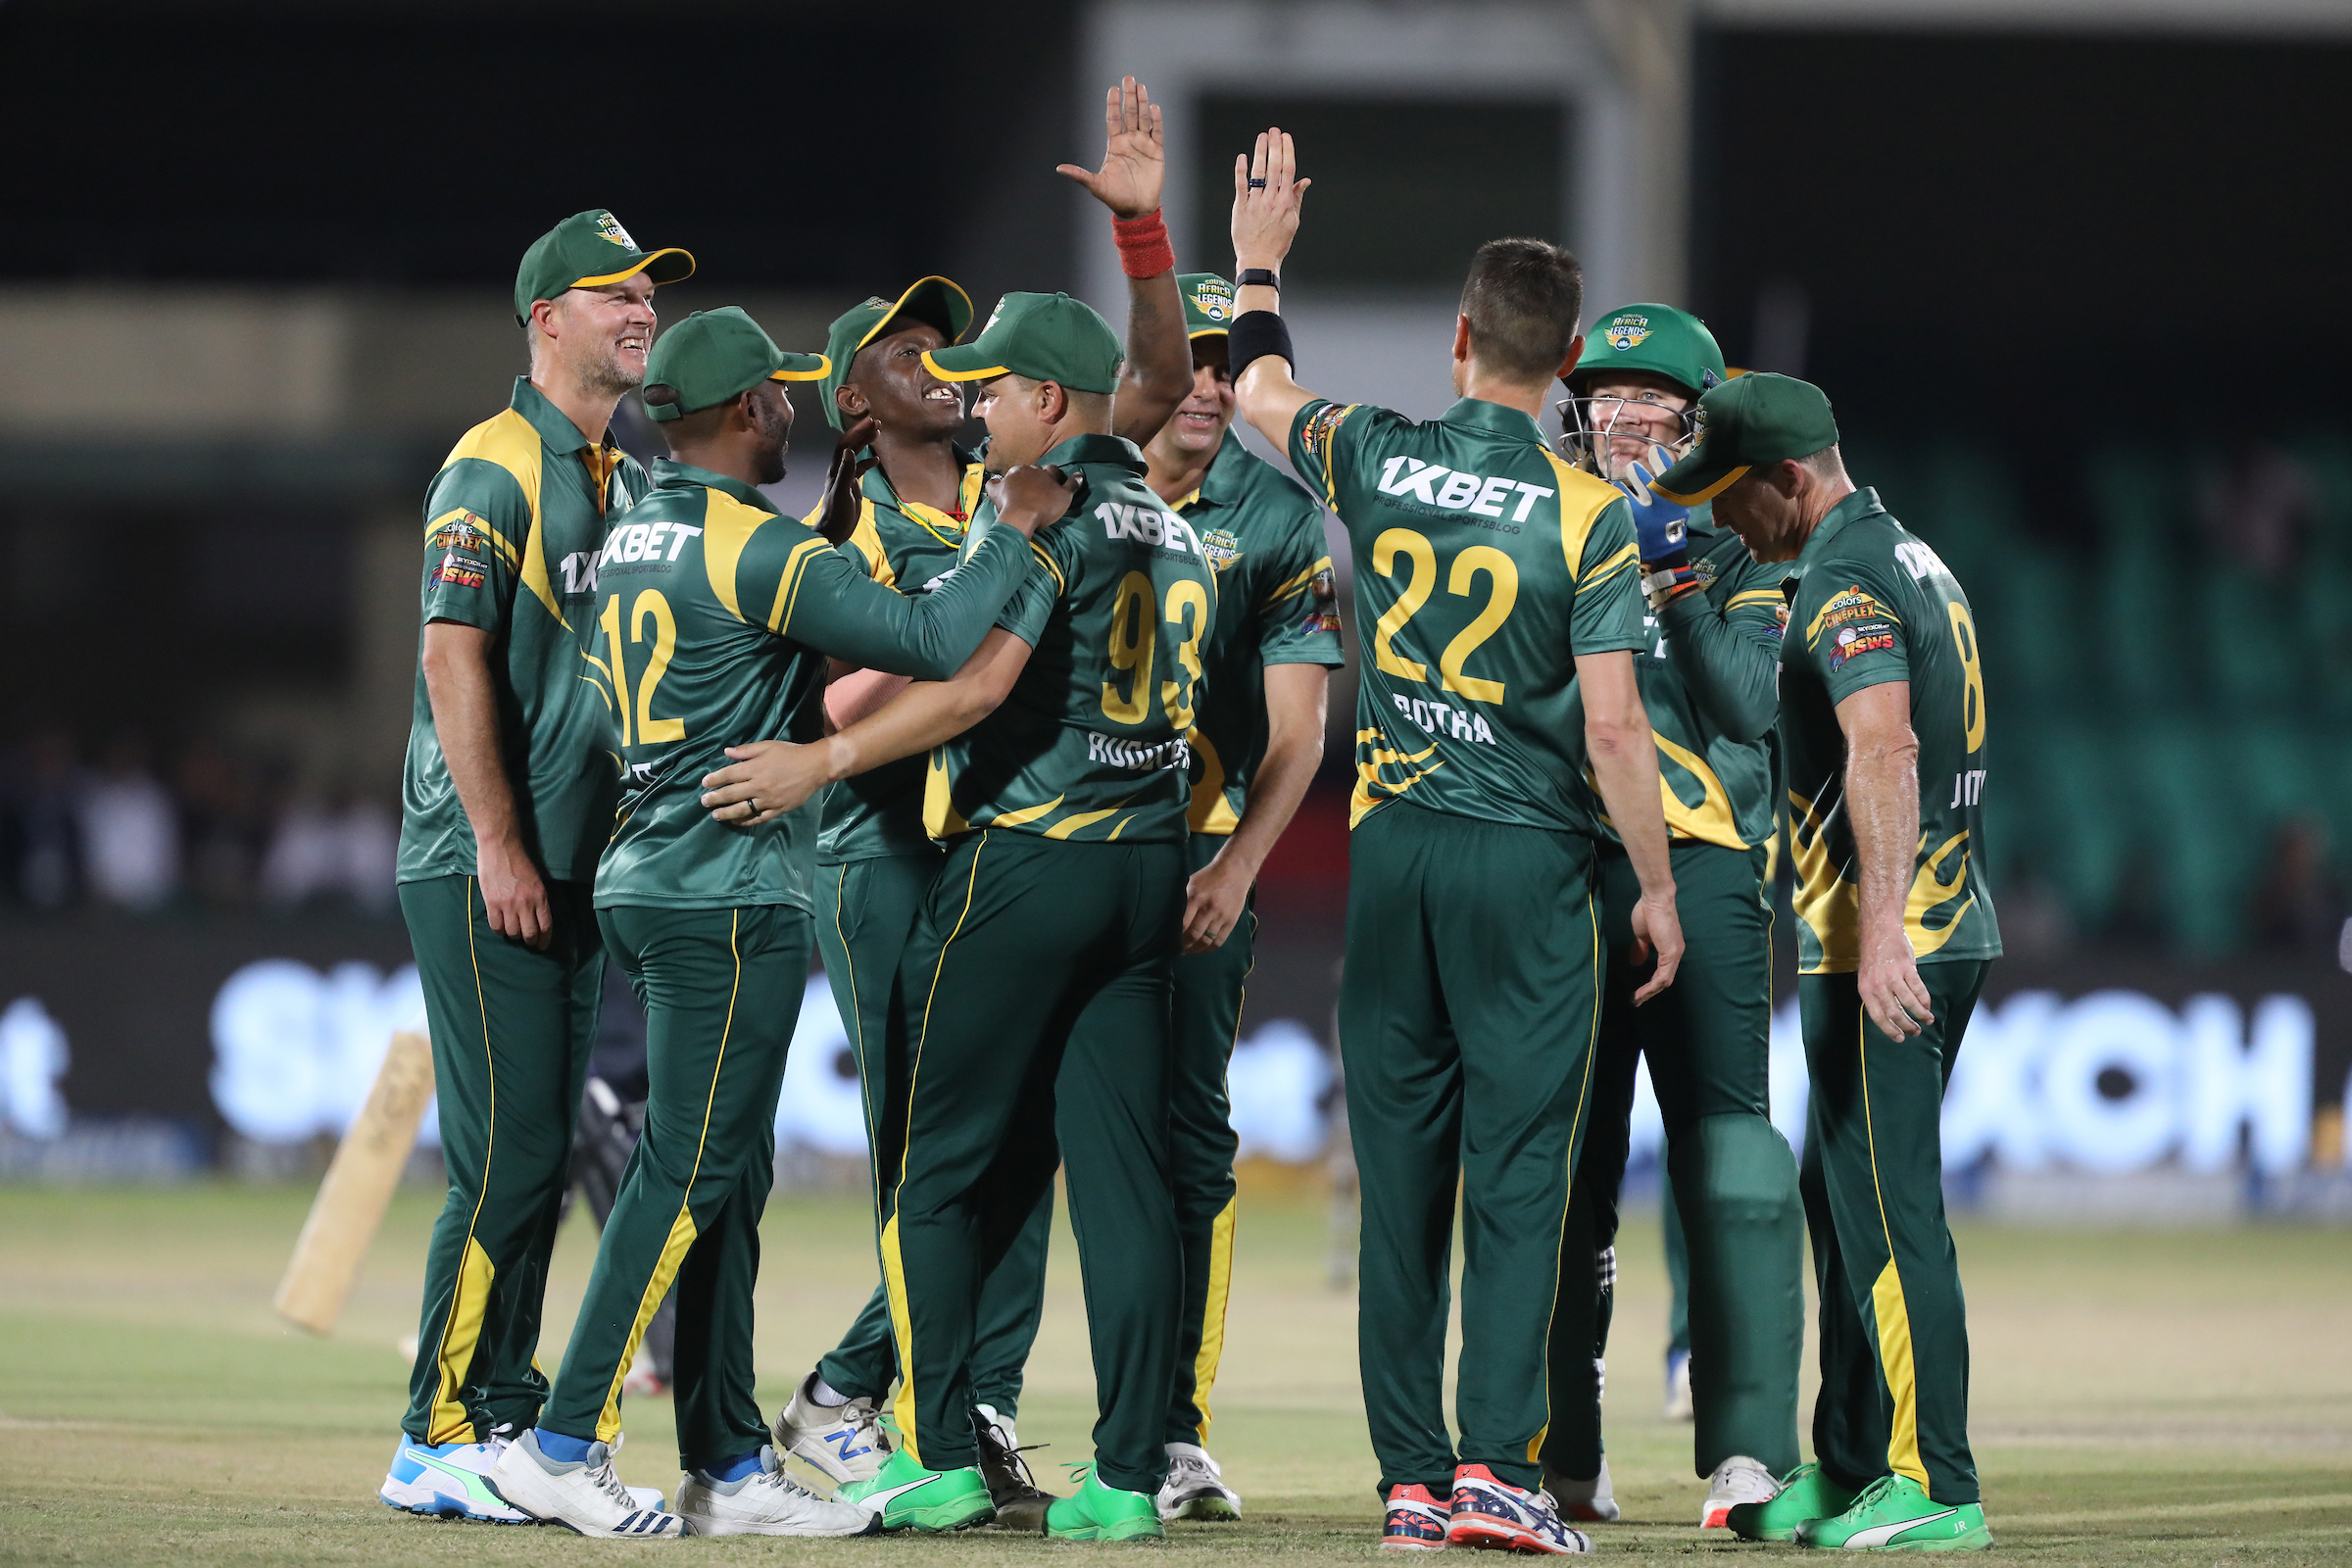 NZ-L vs SA-L: रोड सेफ्टी सीरीज के चौथे मैच में साउथ अफ्रीका लेजेंड्स ने मारी बाजी, न्यूजीलैंड लेजेंड्स को 9 विकेट से हराया